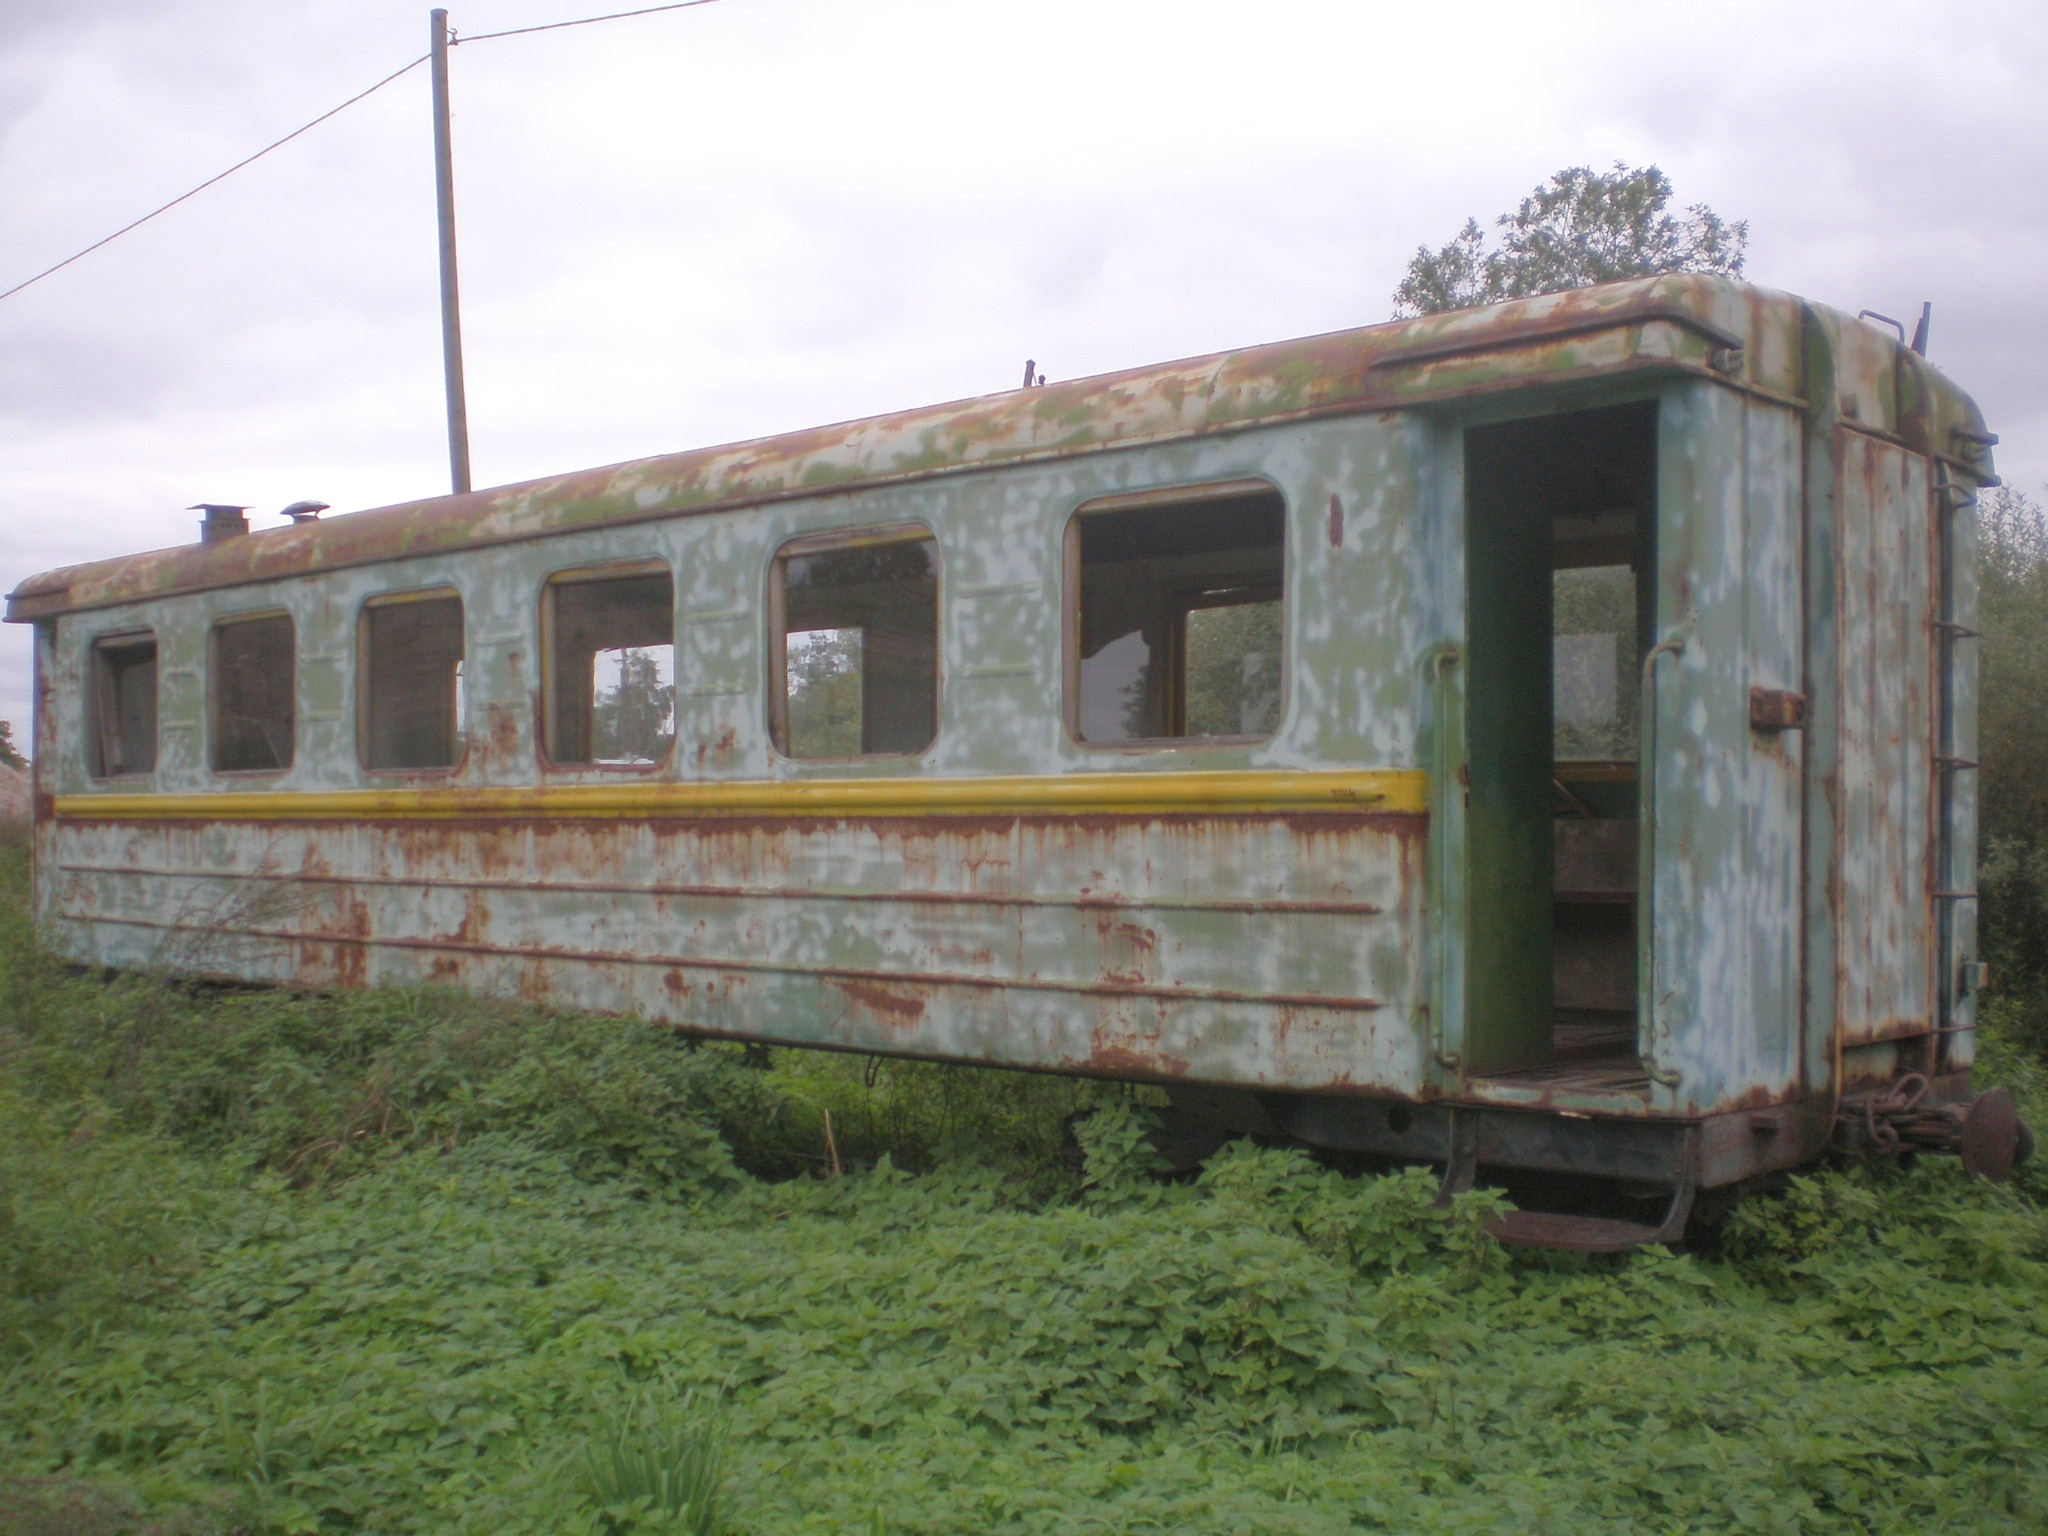 Узкоколейная железная дорога торфопредприятия Улила  —  фотографии, сделанные в 2008 году (часть 3)